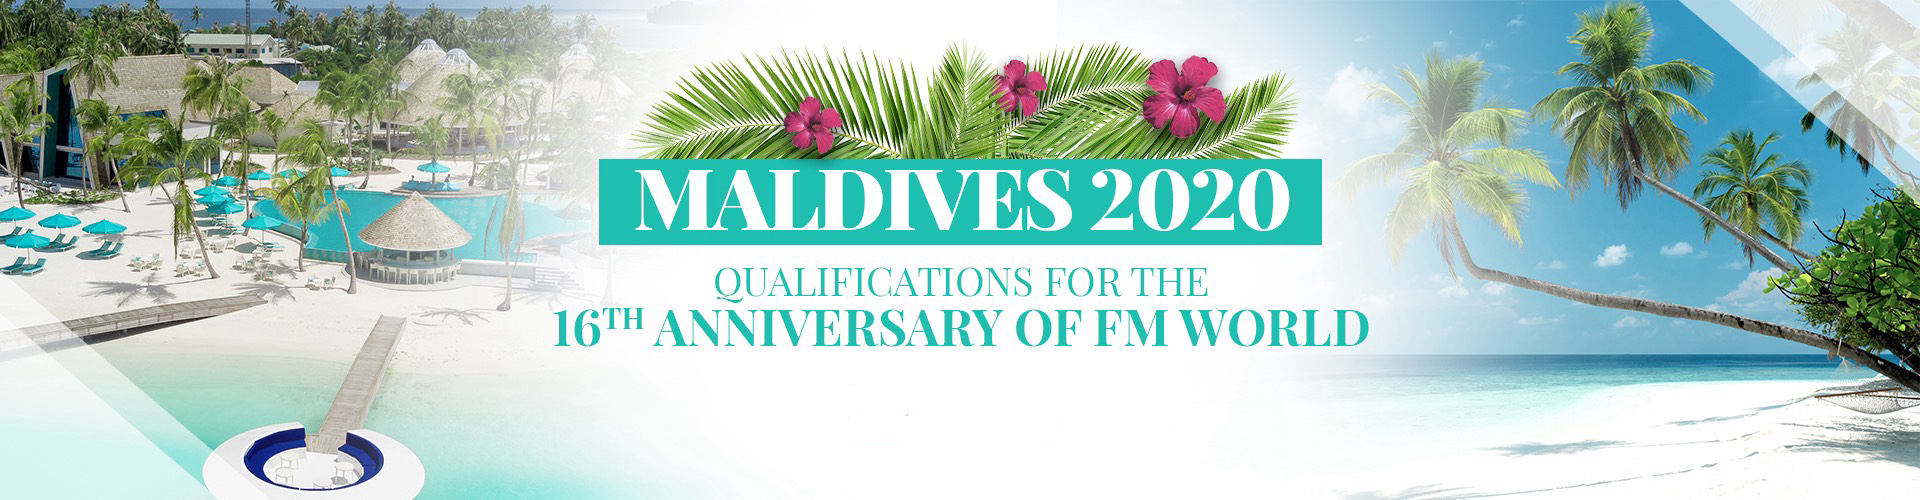 A XVI-a aniversare FM WORLD - MALDIVE 2020.